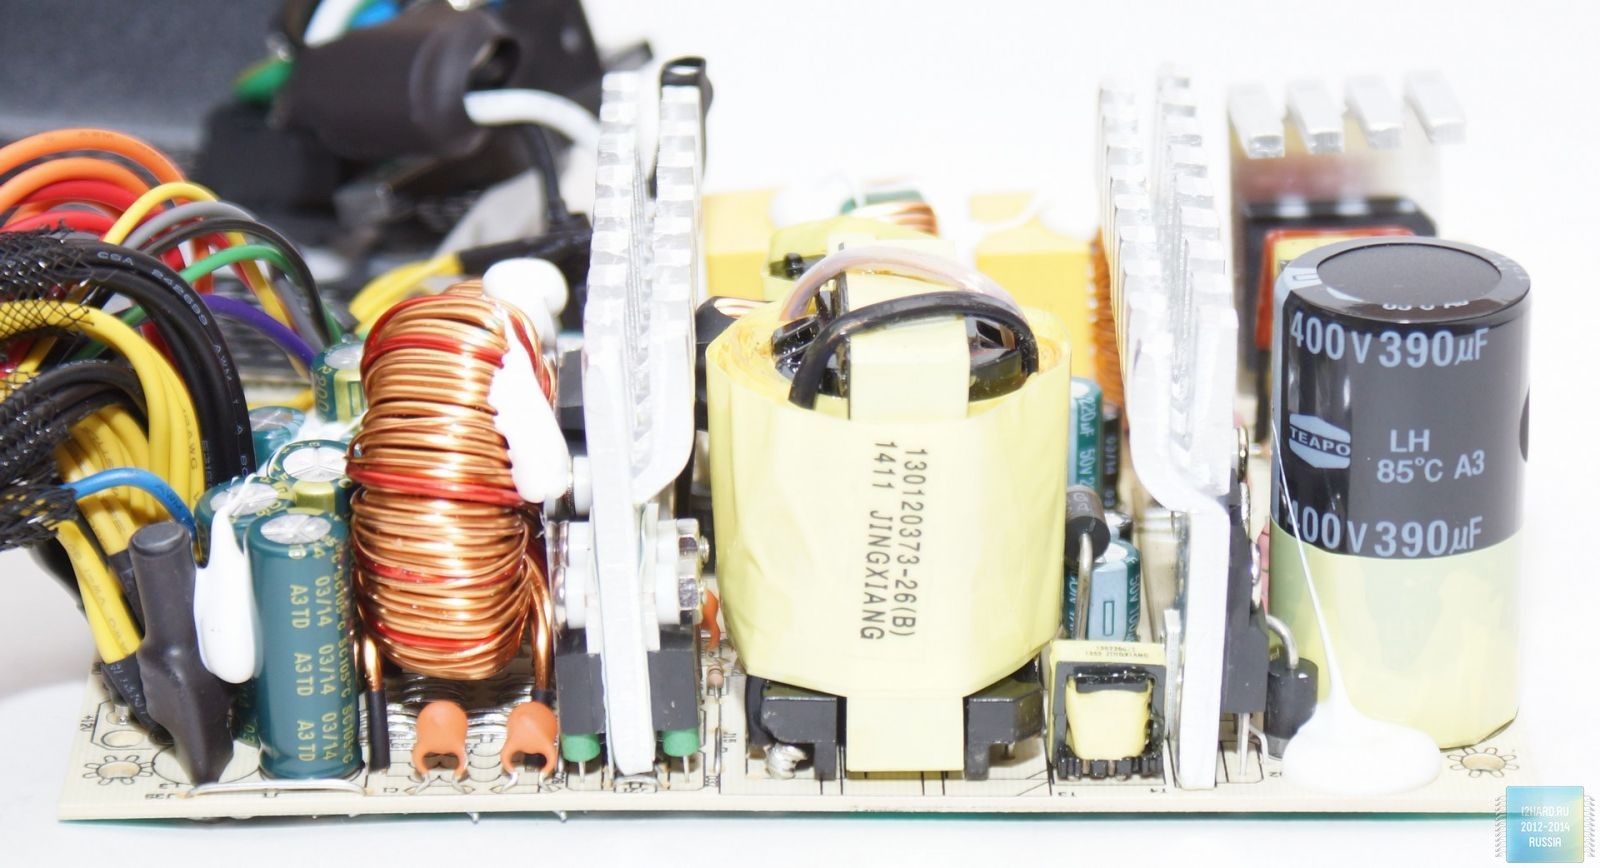 У високовольтної частини встановлений конденсатор виробництва компанії Teapo ємністю 390 мкФ (400 В) розрахований на температуру 85 ° C